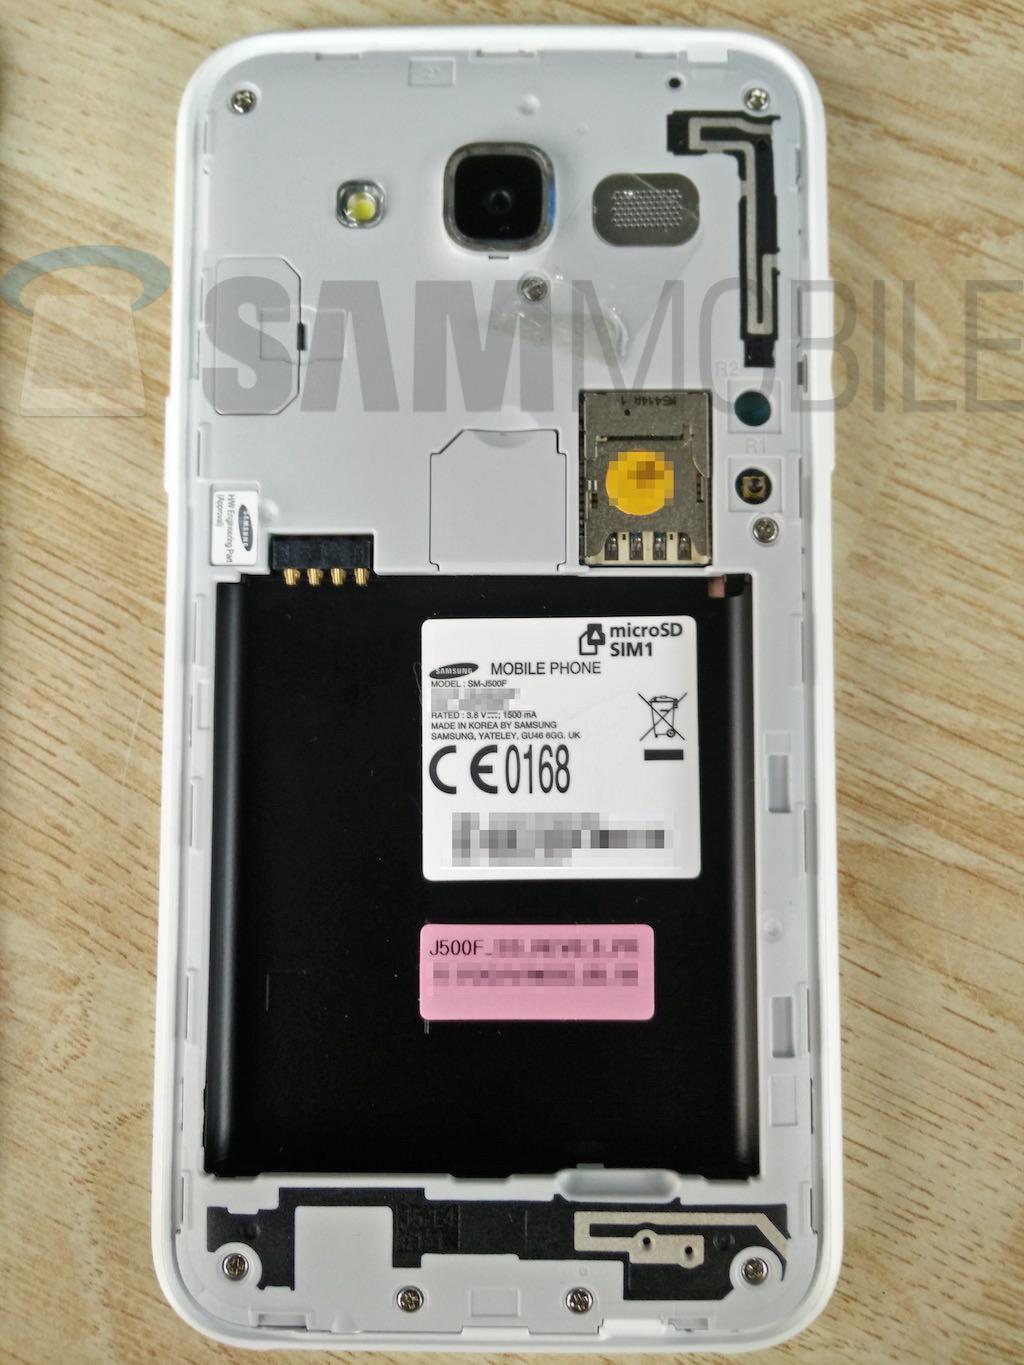 Imágenes y ficha técnica completa del nuevo Samsung Galaxy J5